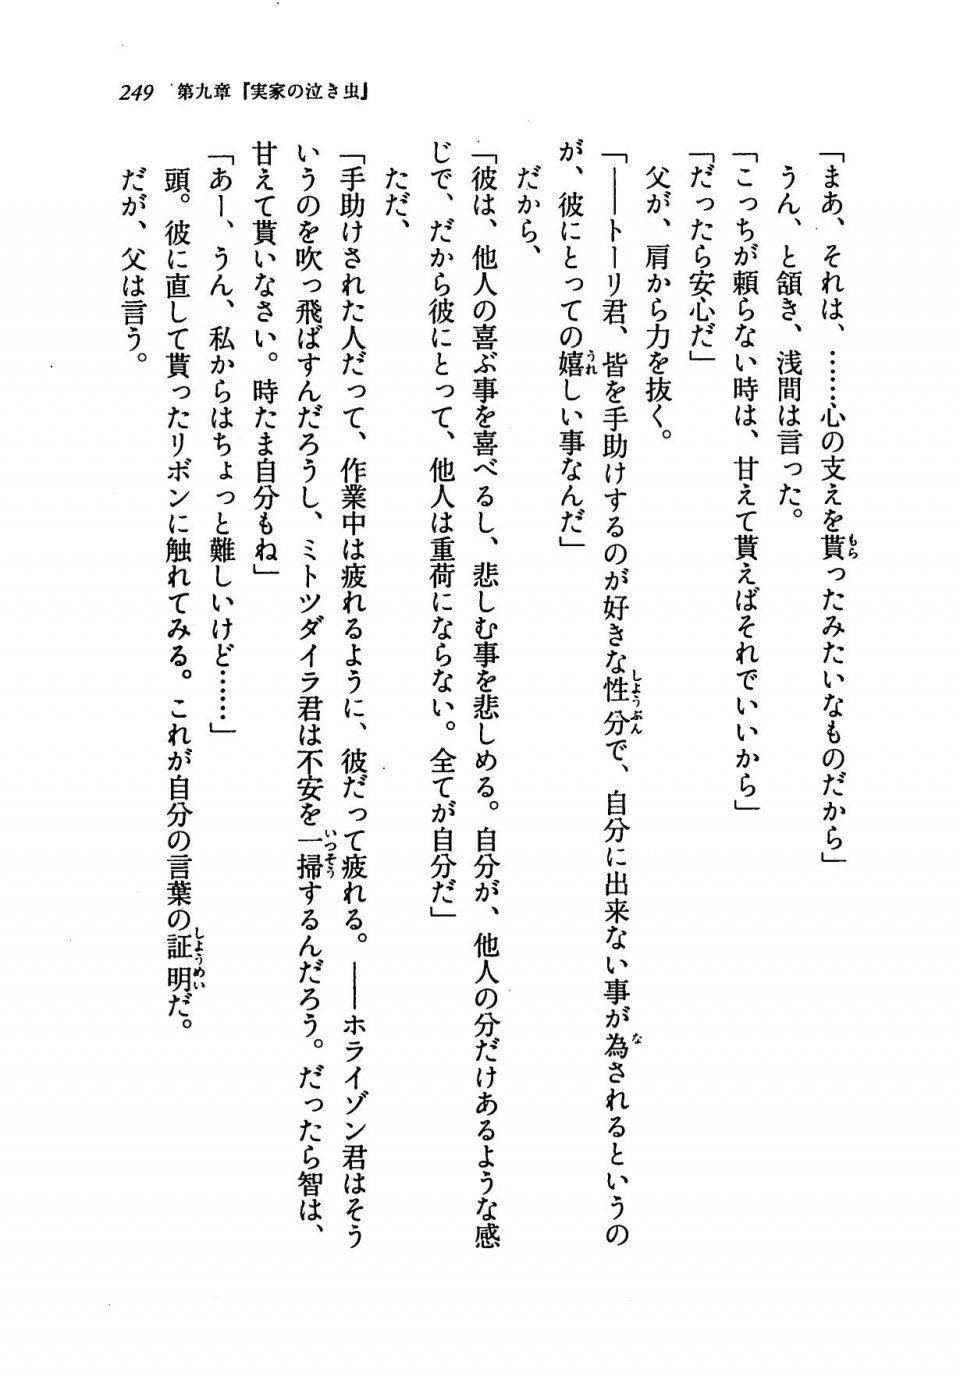 Kyoukai Senjou no Horizon LN Vol 19(8A) - Photo #249